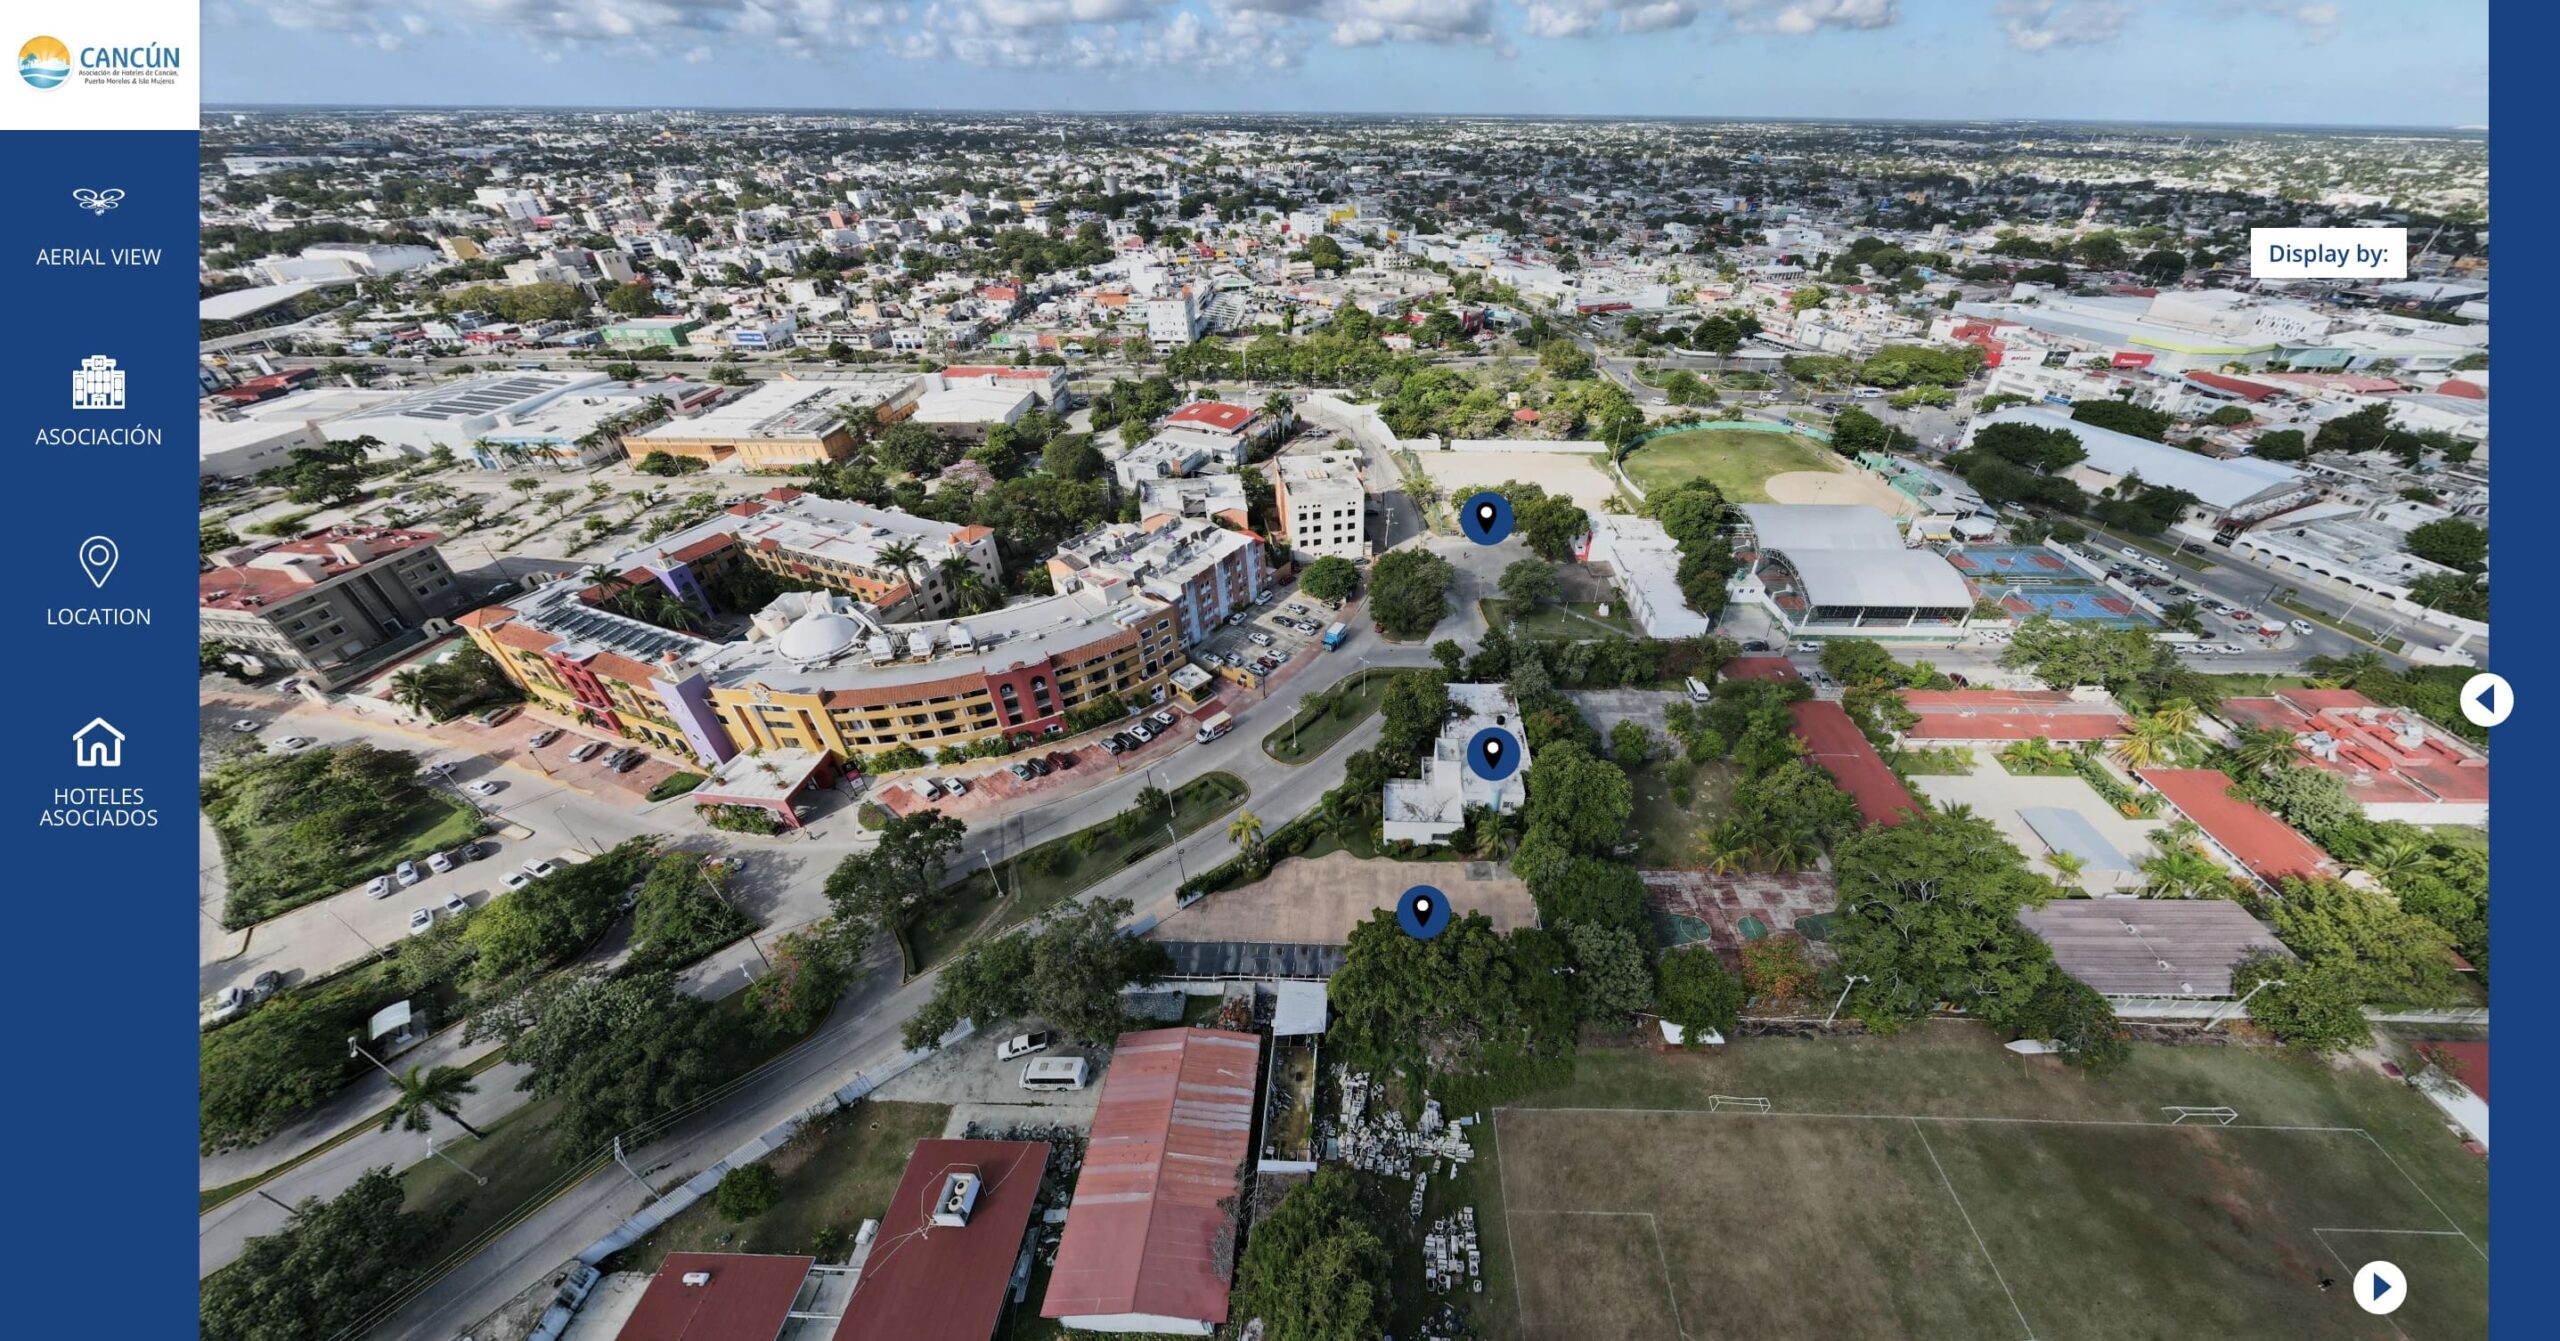 360º Aerial View in AHCPMIM